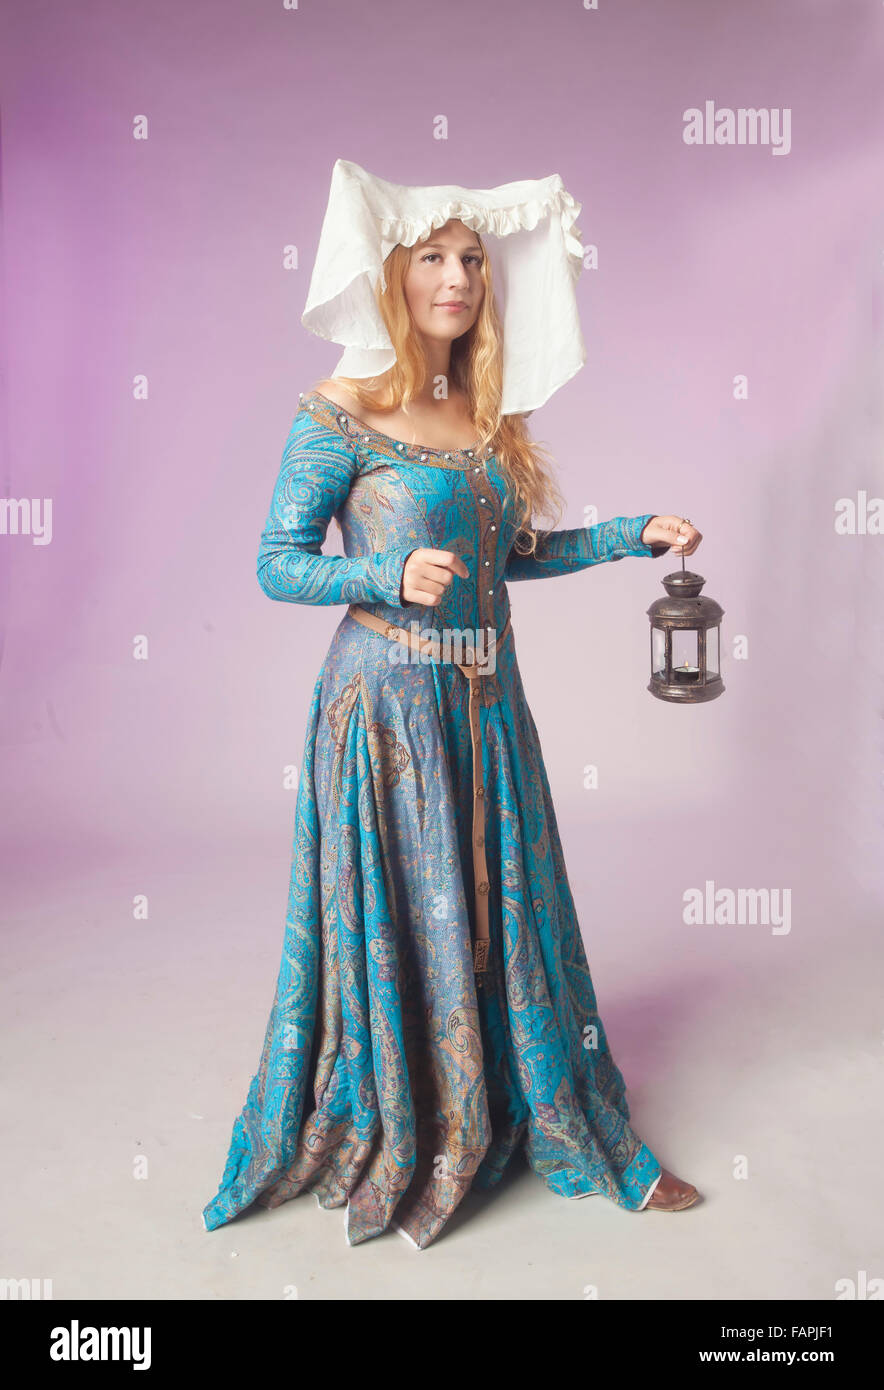 Studio shot della bella ragazza vestita come un nobile medievale lady mantenendo uno stile retrò lampada su sfondo viola Foto Stock